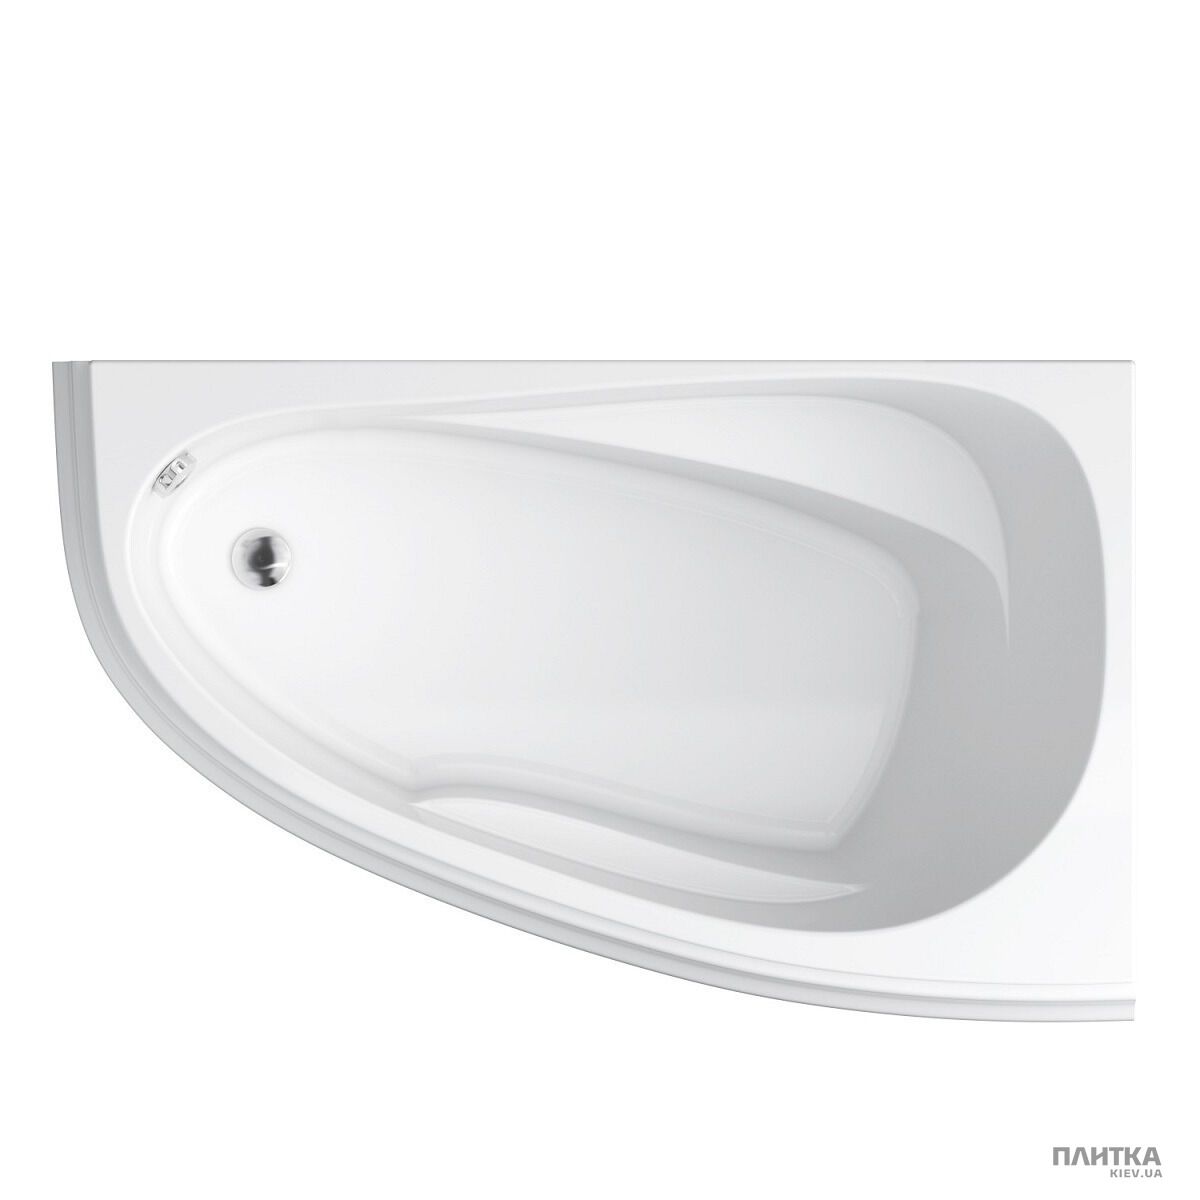 Акриловая ванна Cersanit Joanna New 160x95 см правая, асимметричная белый